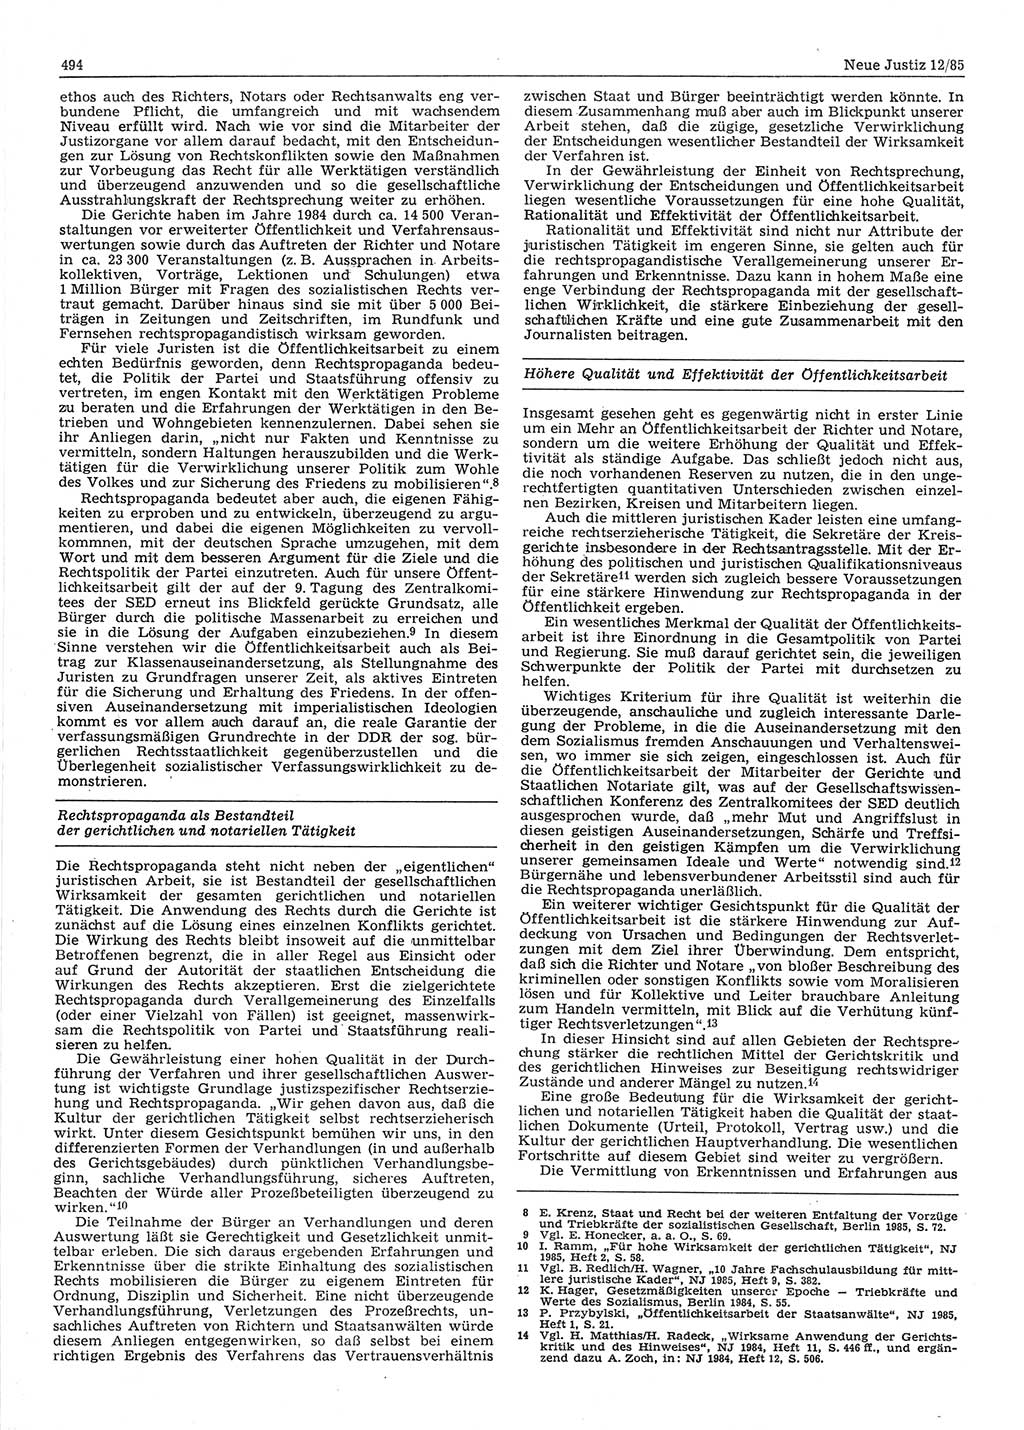 Neue Justiz (NJ), Zeitschrift für sozialistisches Recht und Gesetzlichkeit [Deutsche Demokratische Republik (DDR)], 39. Jahrgang 1985, Seite 494 (NJ DDR 1985, S. 494)